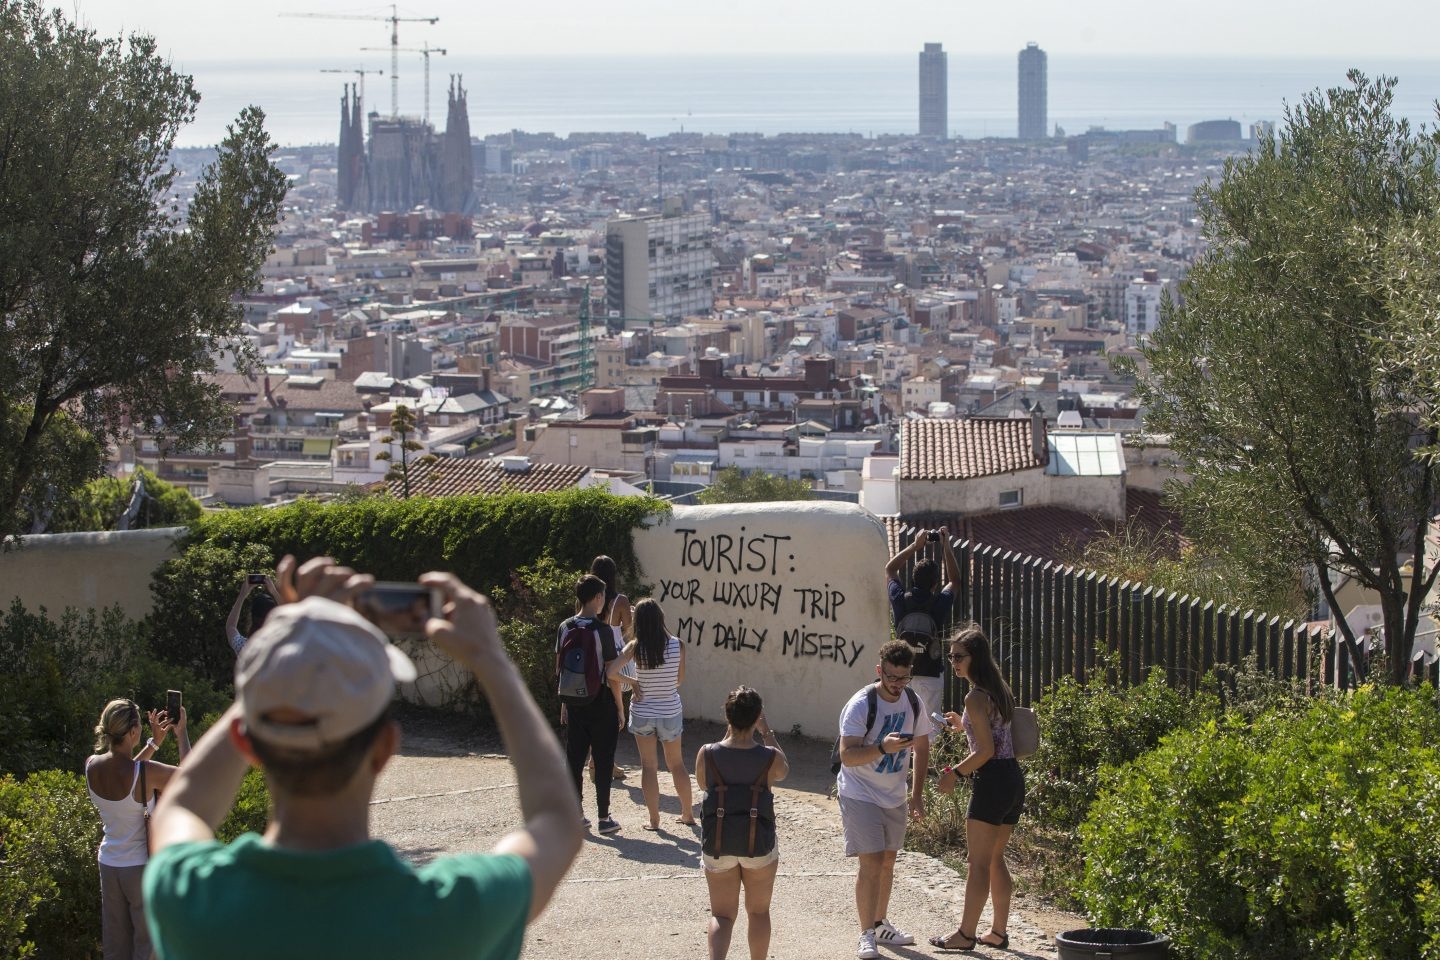 Pintada contra el turismo en el Parque Güell de Barcelona.